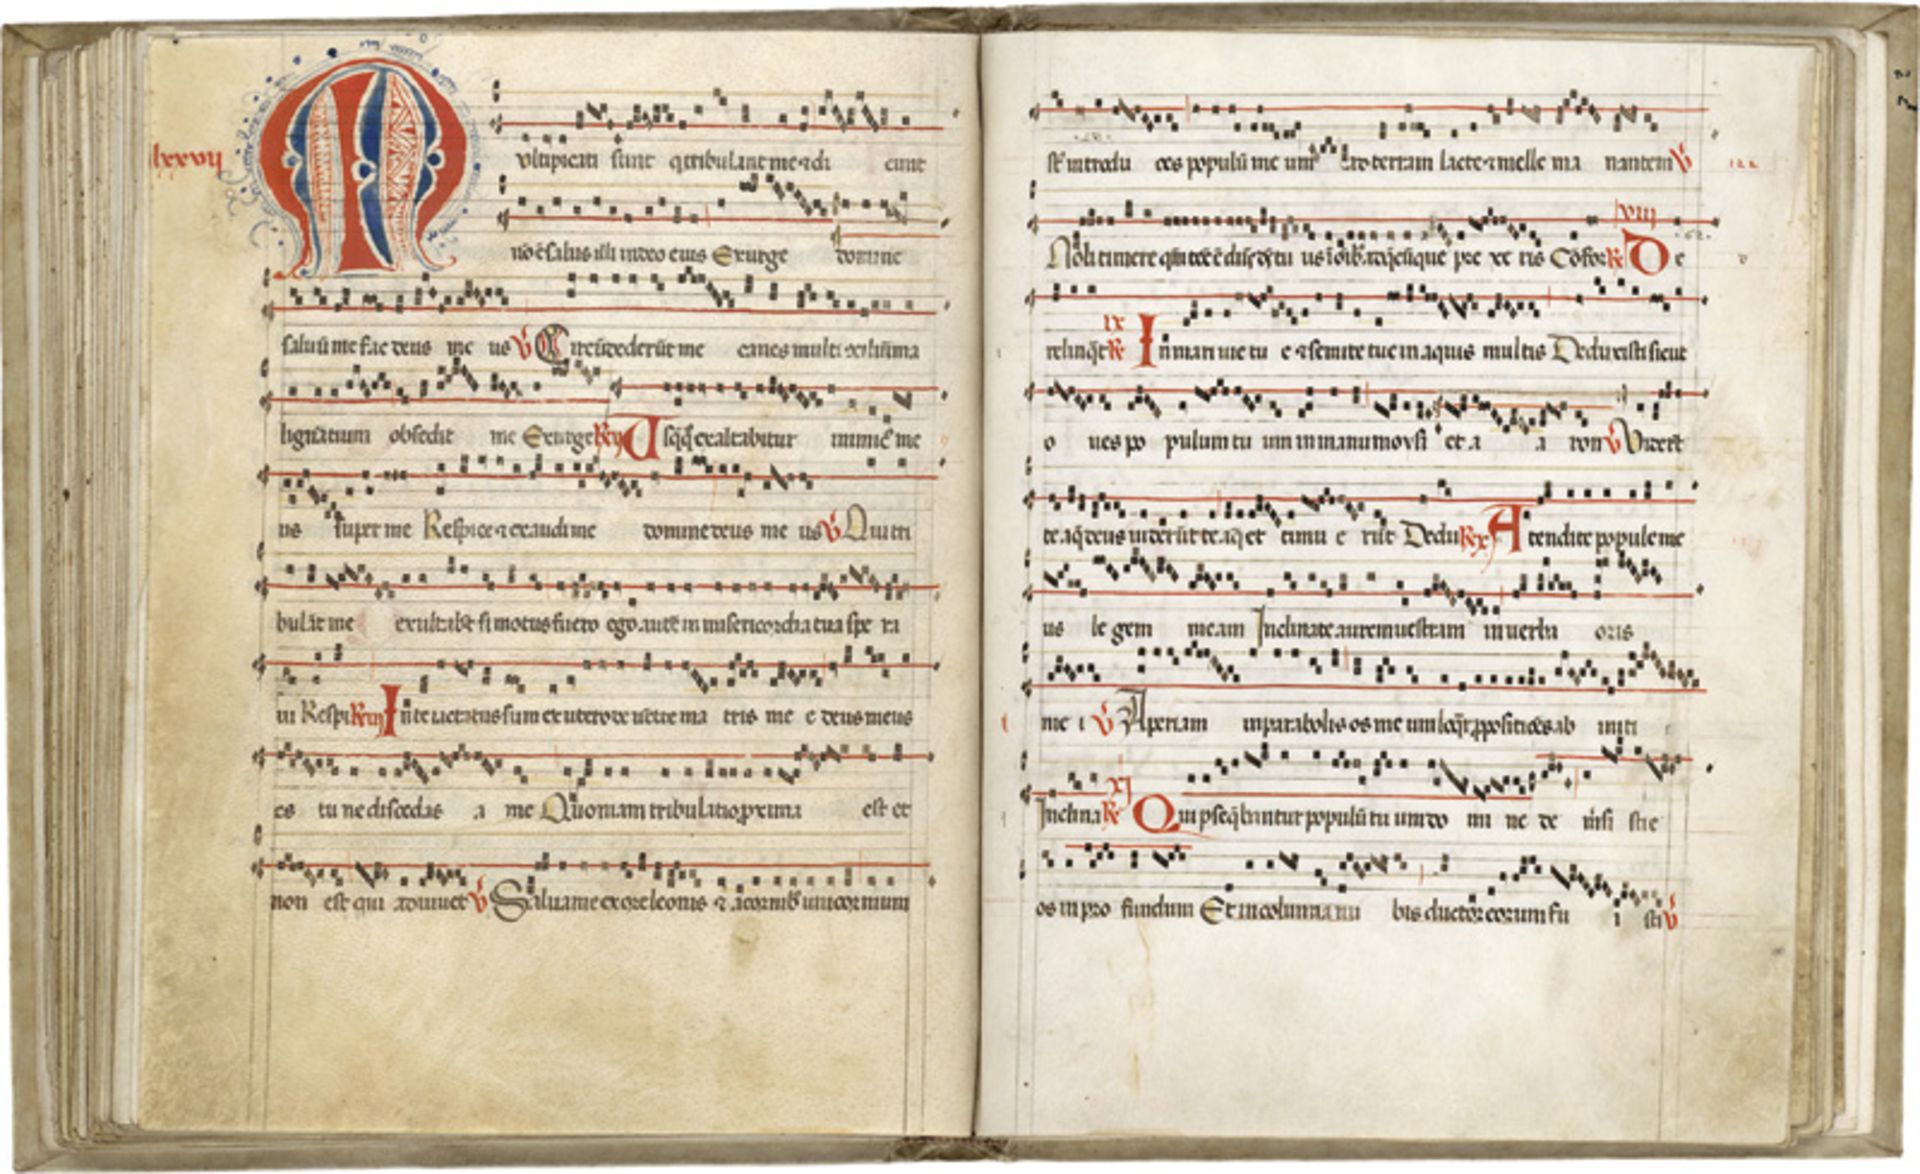 Antiphonale-Fragment: Lateinische Handschrift auf Pergament.